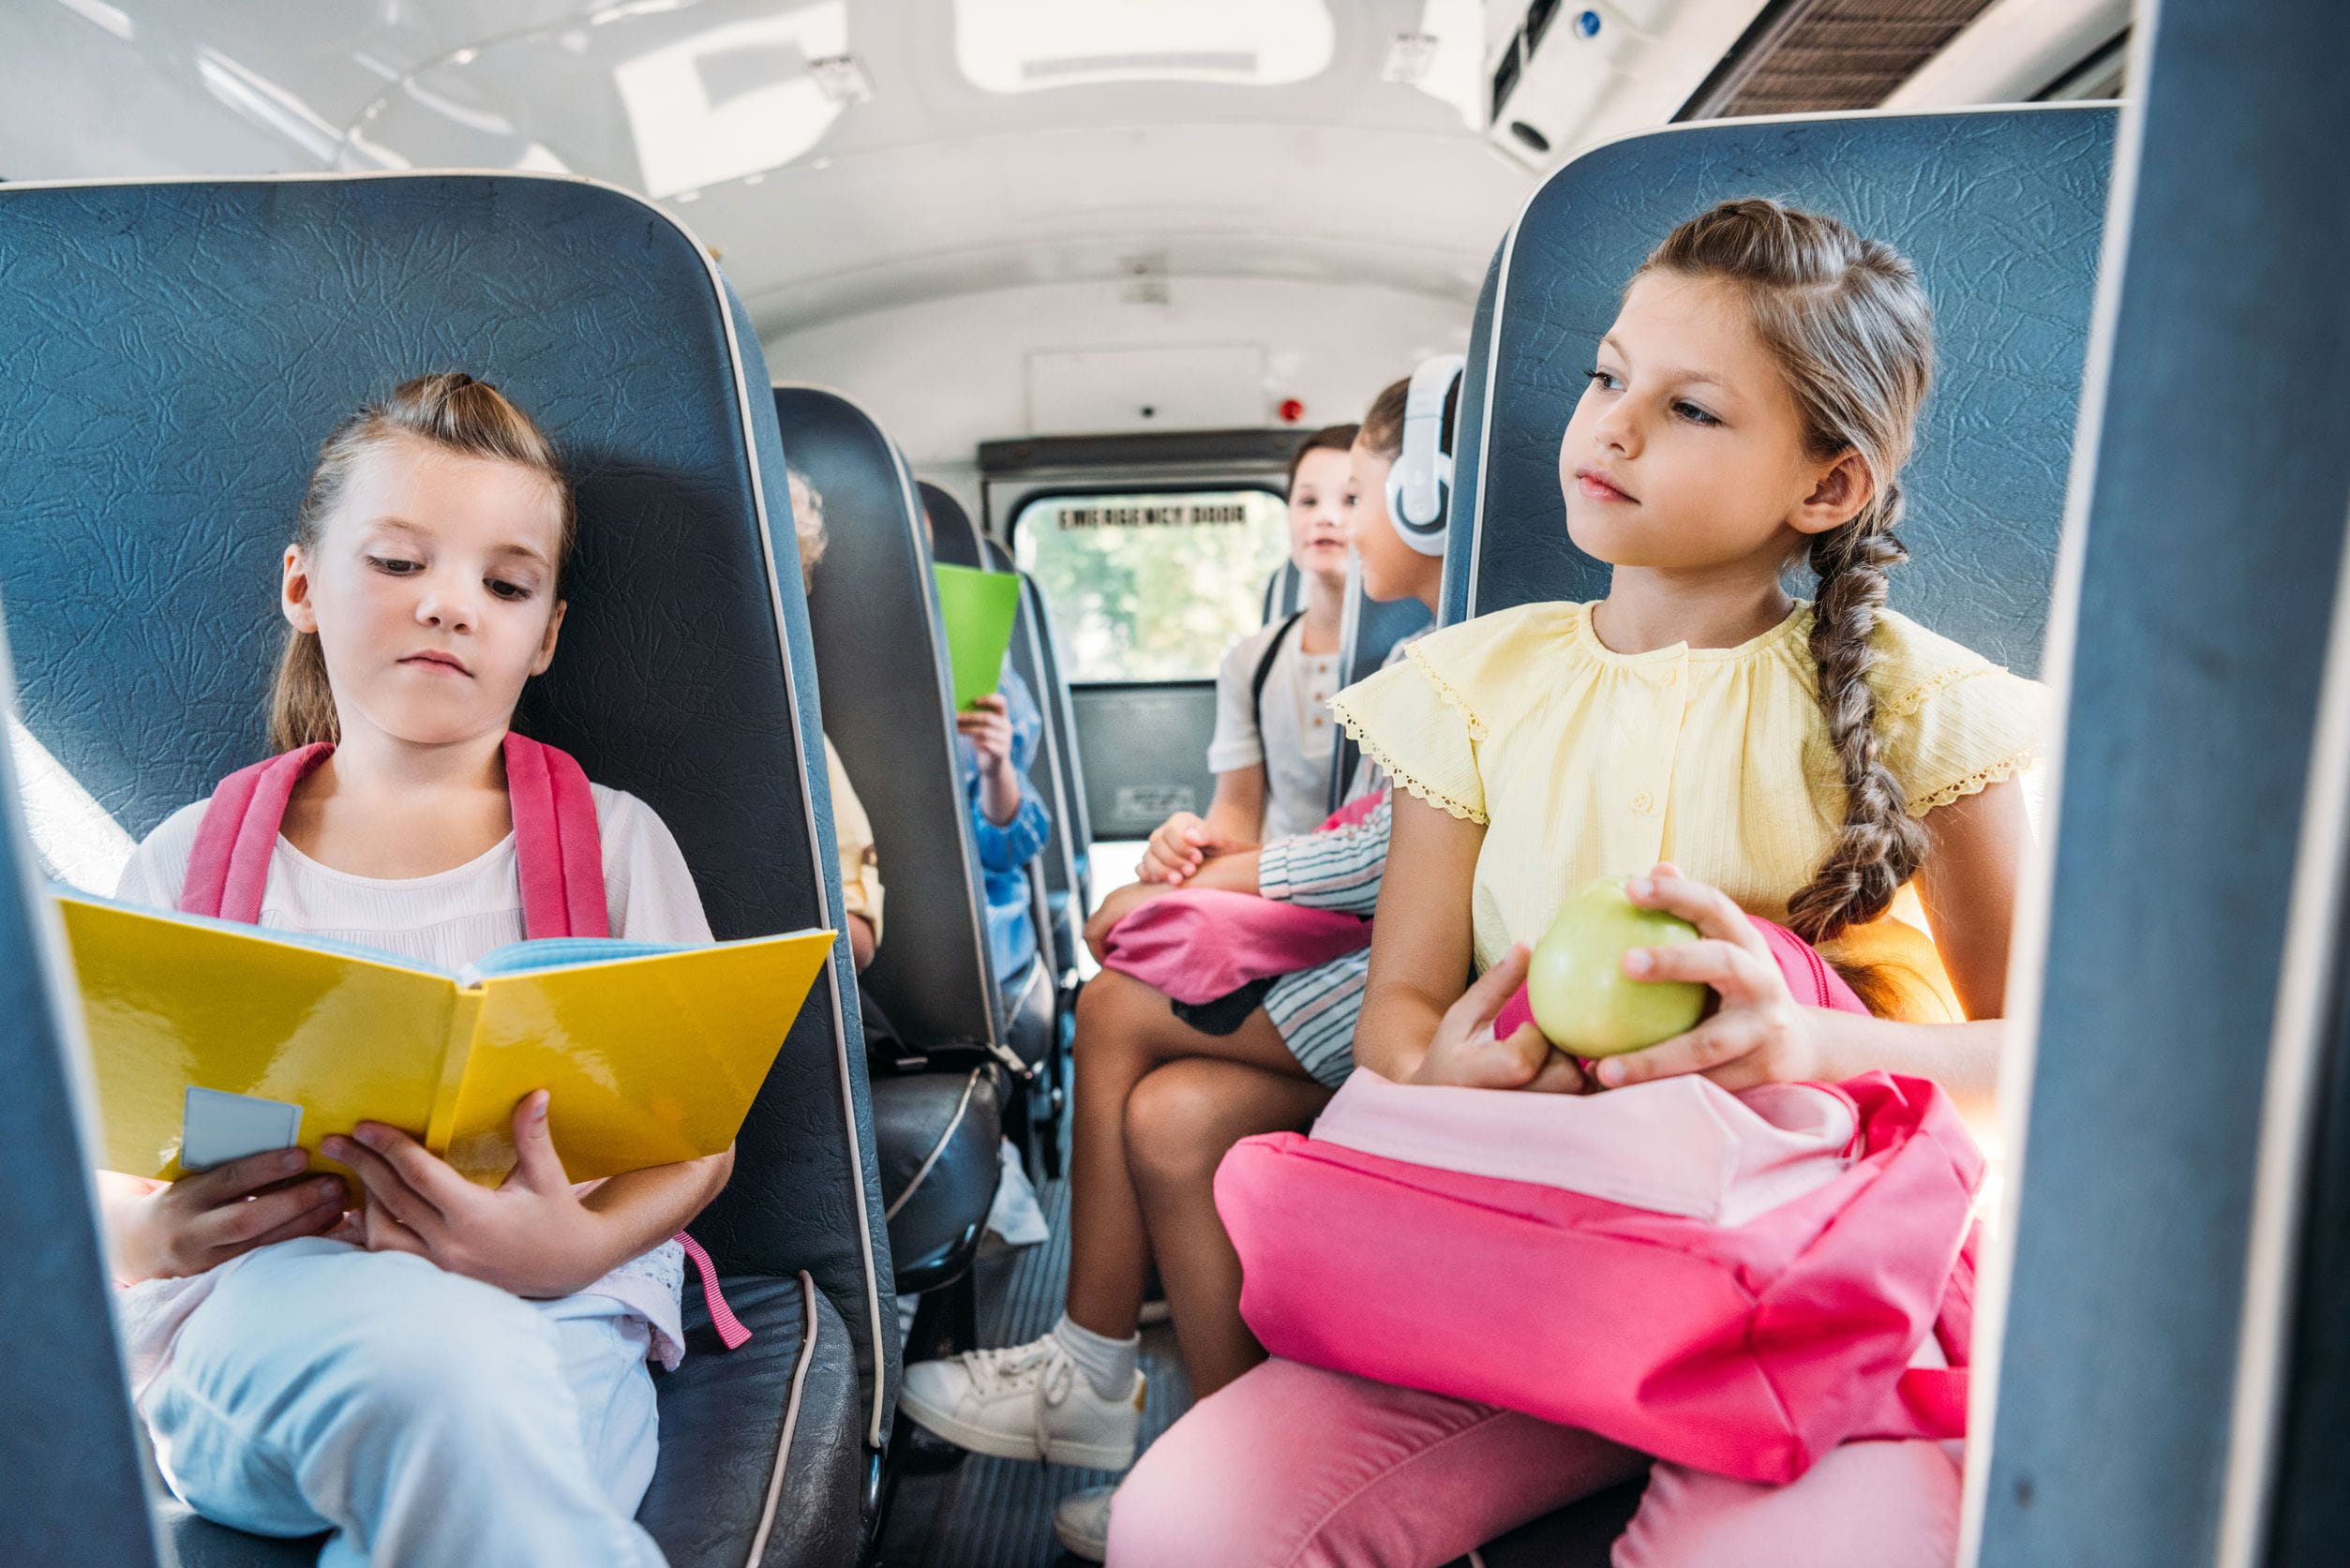 Автобусы дети новый. Автобус для детей. Общественный транспорт для детей. Детский экскурсионный автобус. Дети в автобусе на экскурсии.